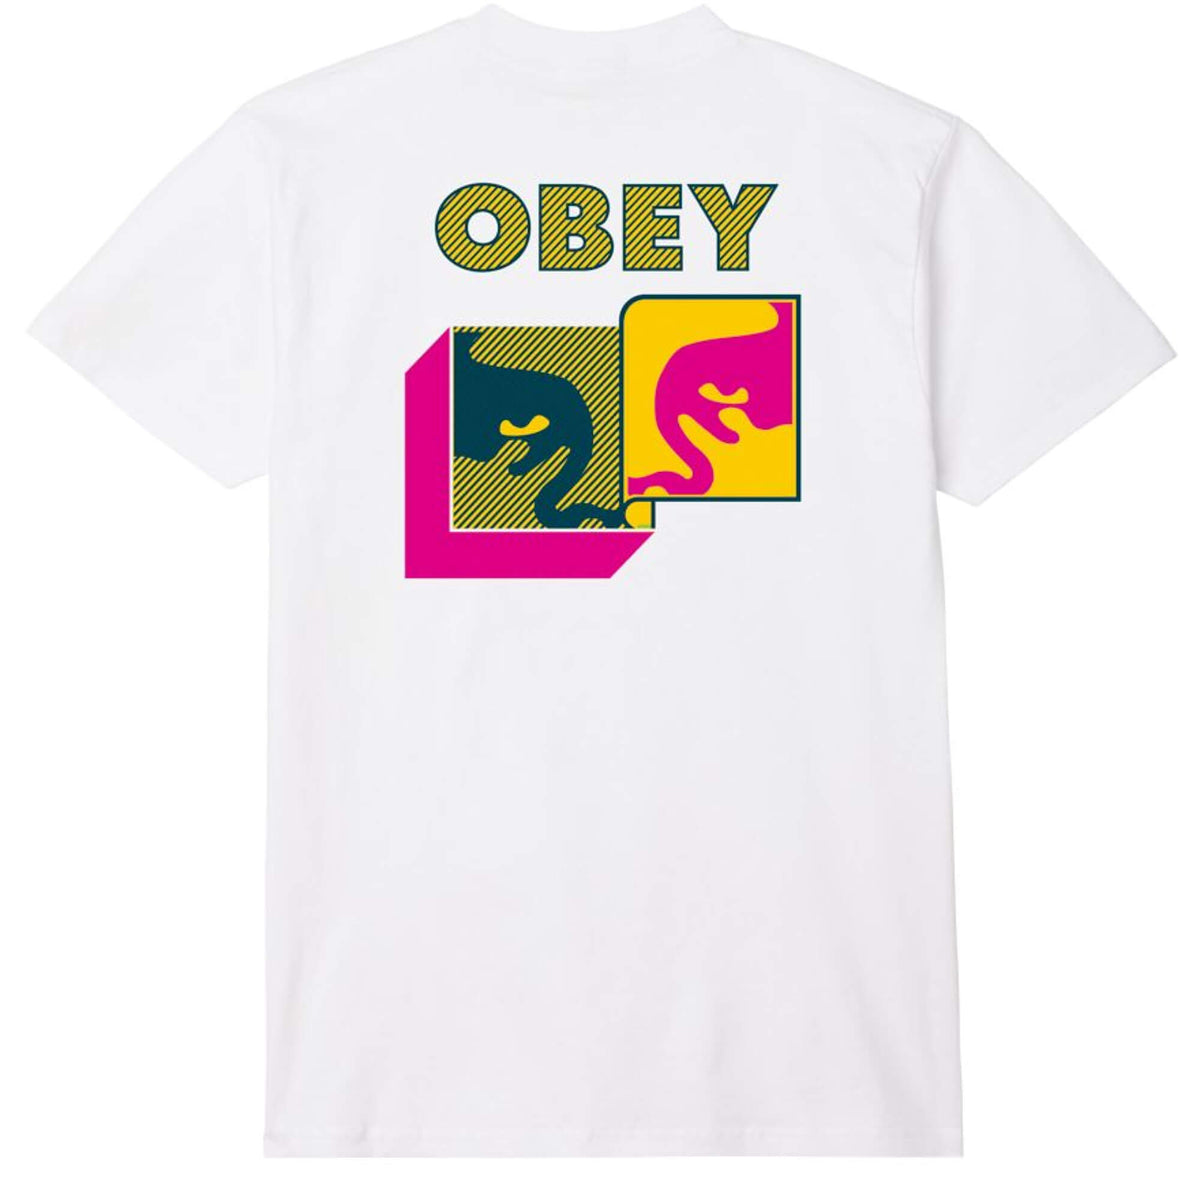 OBEY Post Modern T-Shirt White